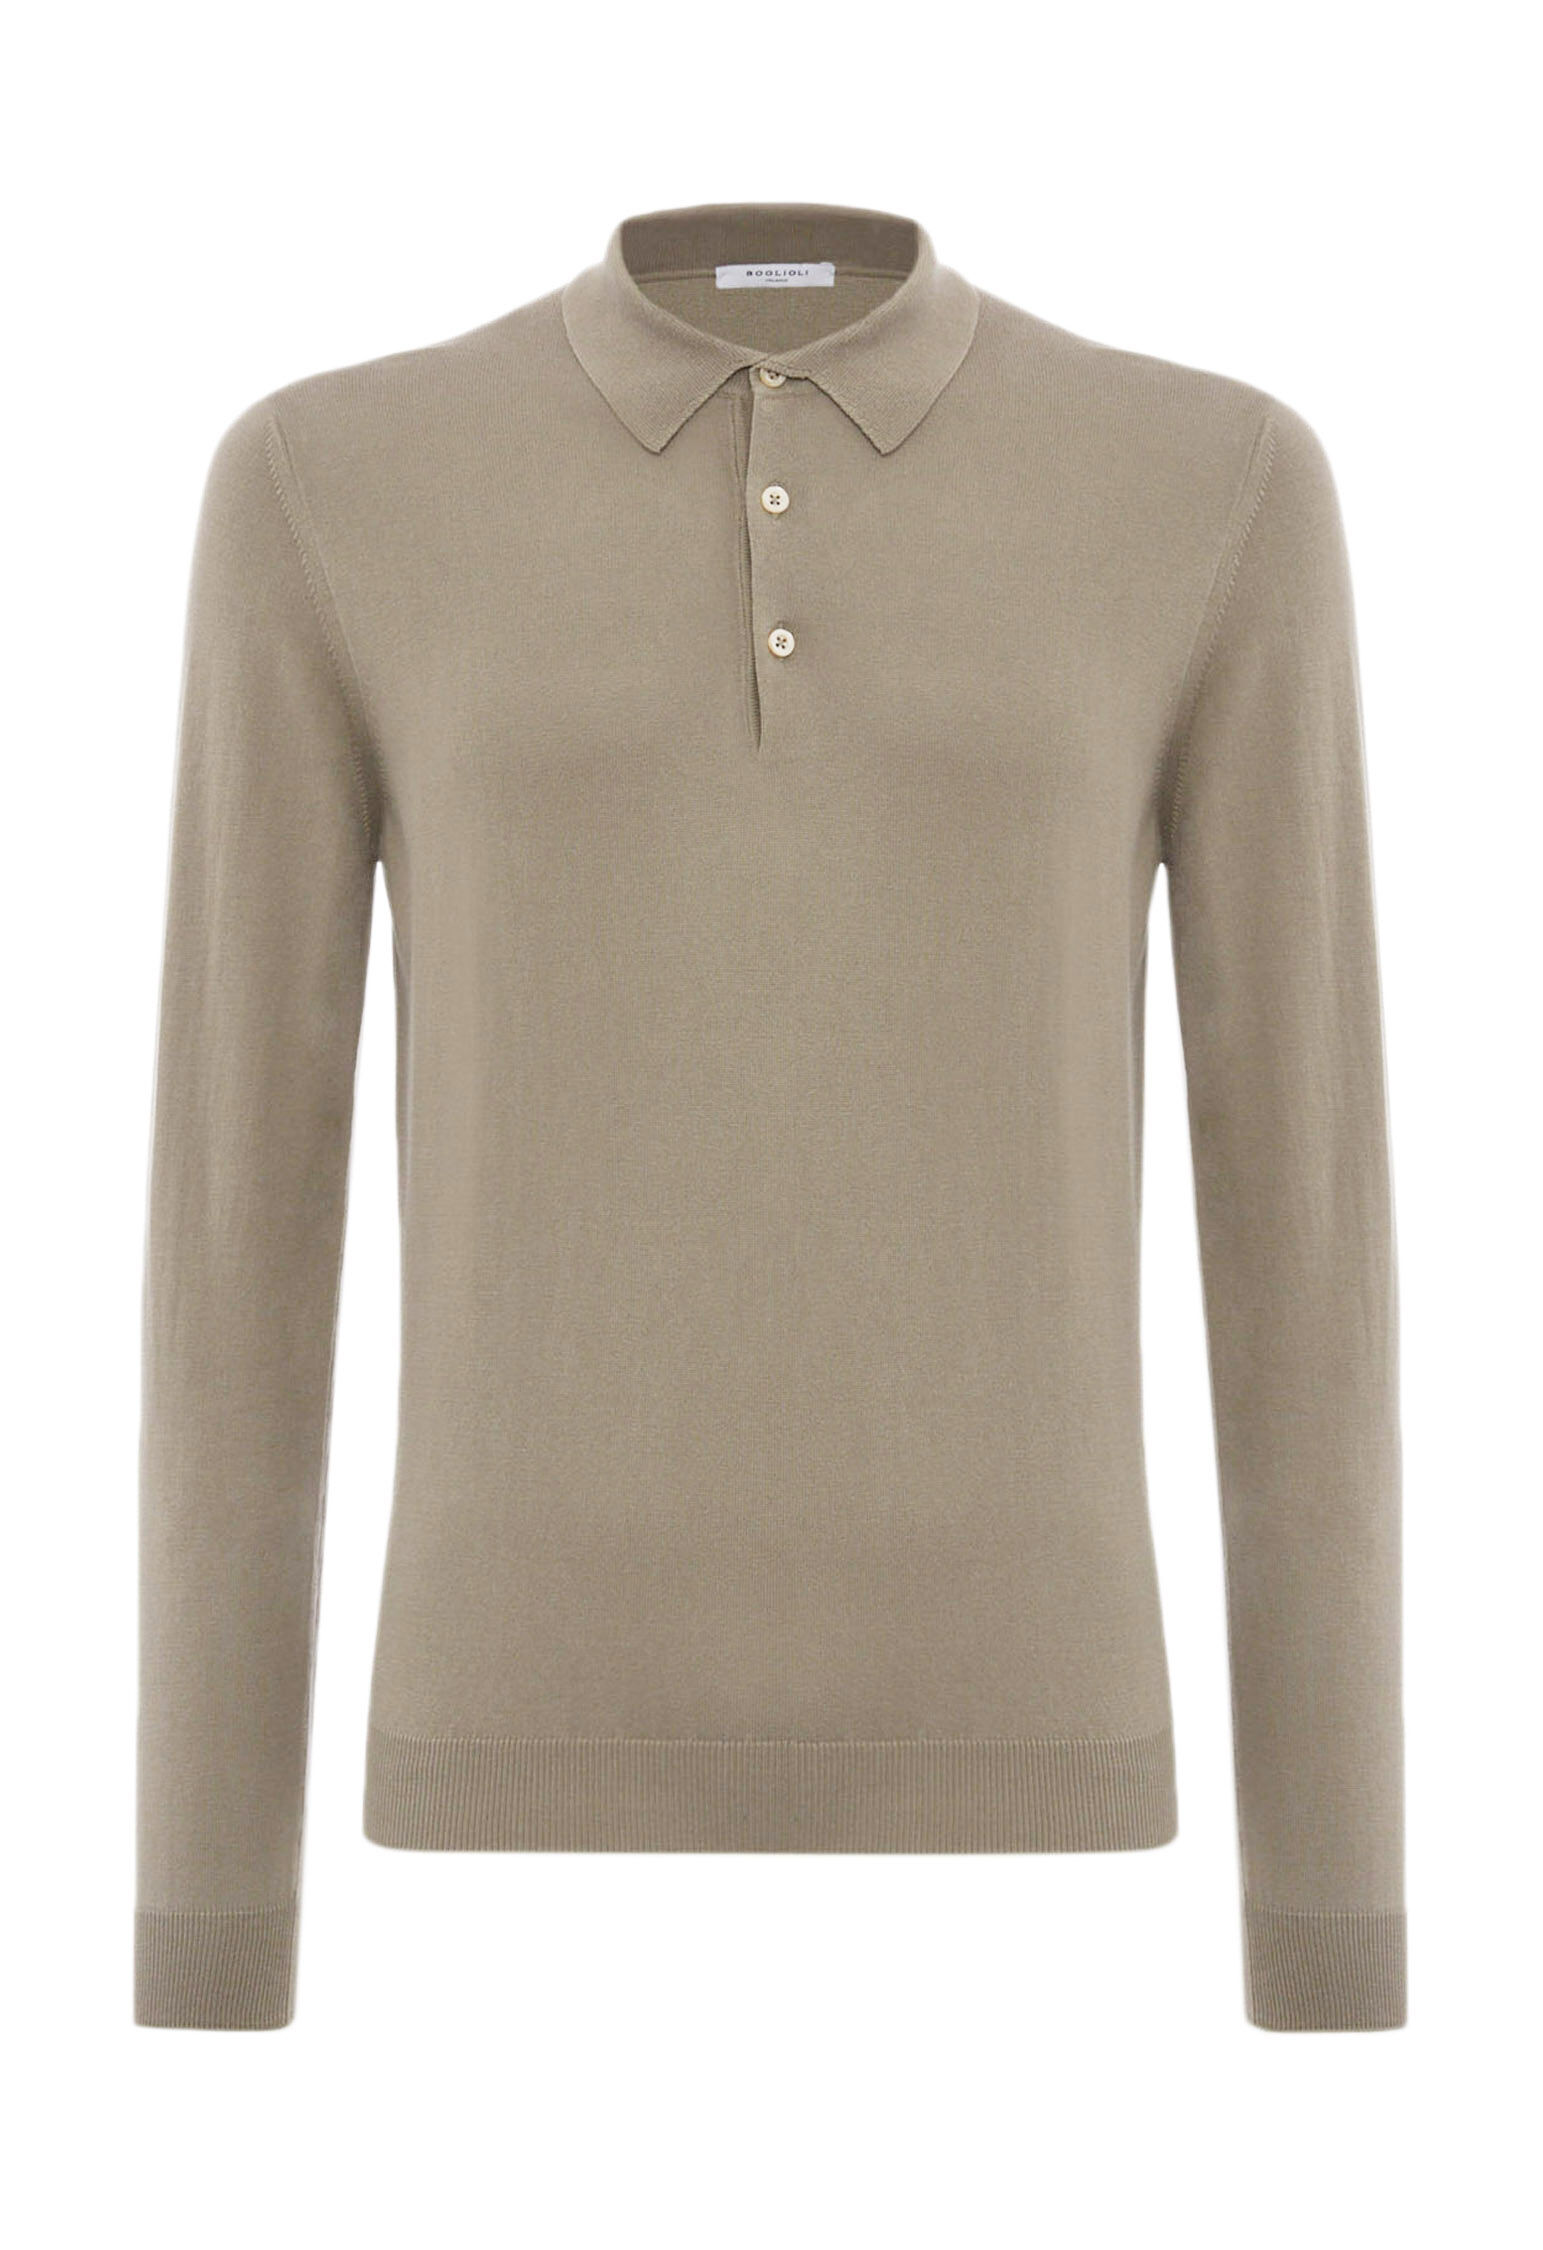 Dove grey 100% cotton long sleeve polo shirt in Dove grey color